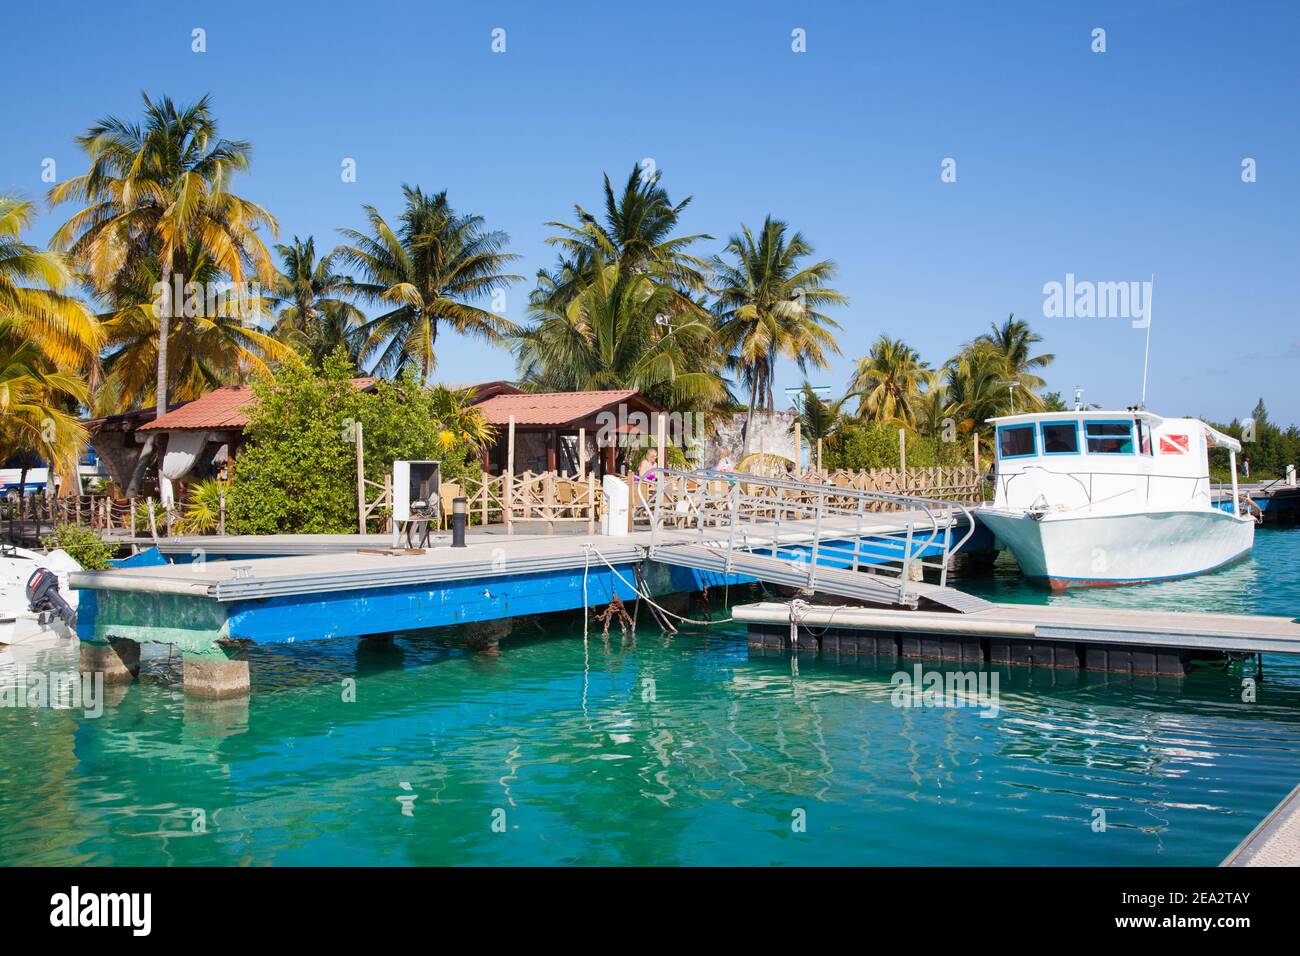 CAYO LARGO, KUBA: EIN Yachthafen auf der luxuriösen tropischen Insel Cayo Largo ist in Kuba. Boot auf dem Hintergrund von smaragdgrünen Wasser und Palmen Stockfoto